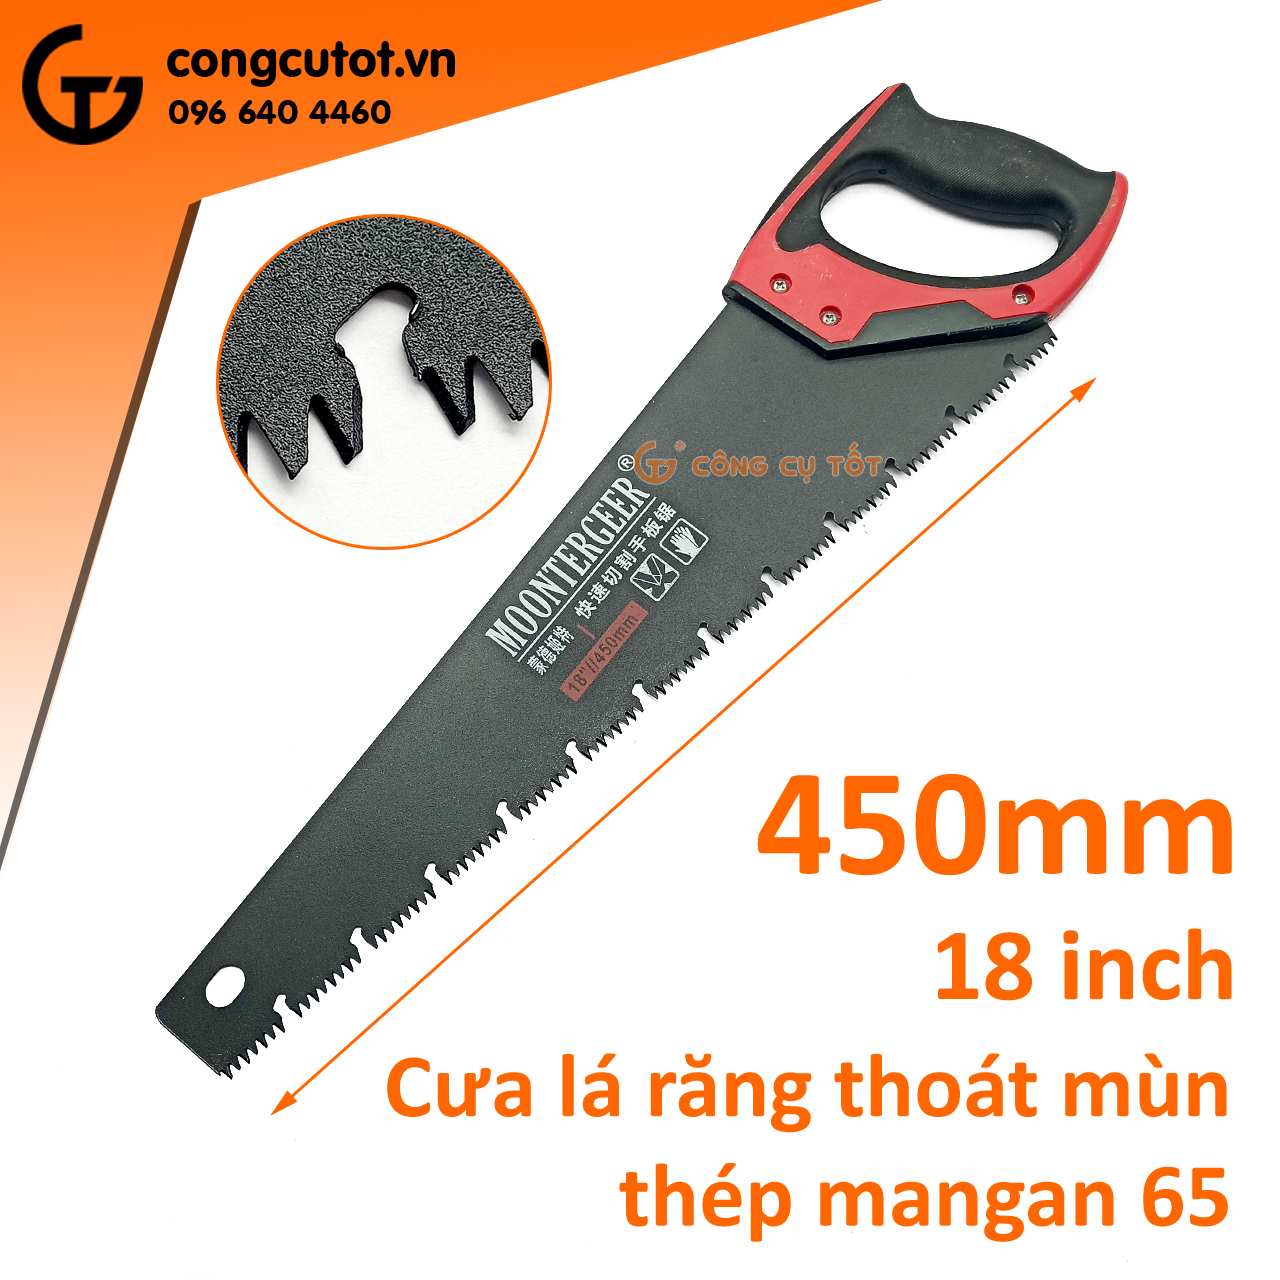 Cưa lá răng thoát mùn bằng thép mangan MN65 dài 18inch 450mm